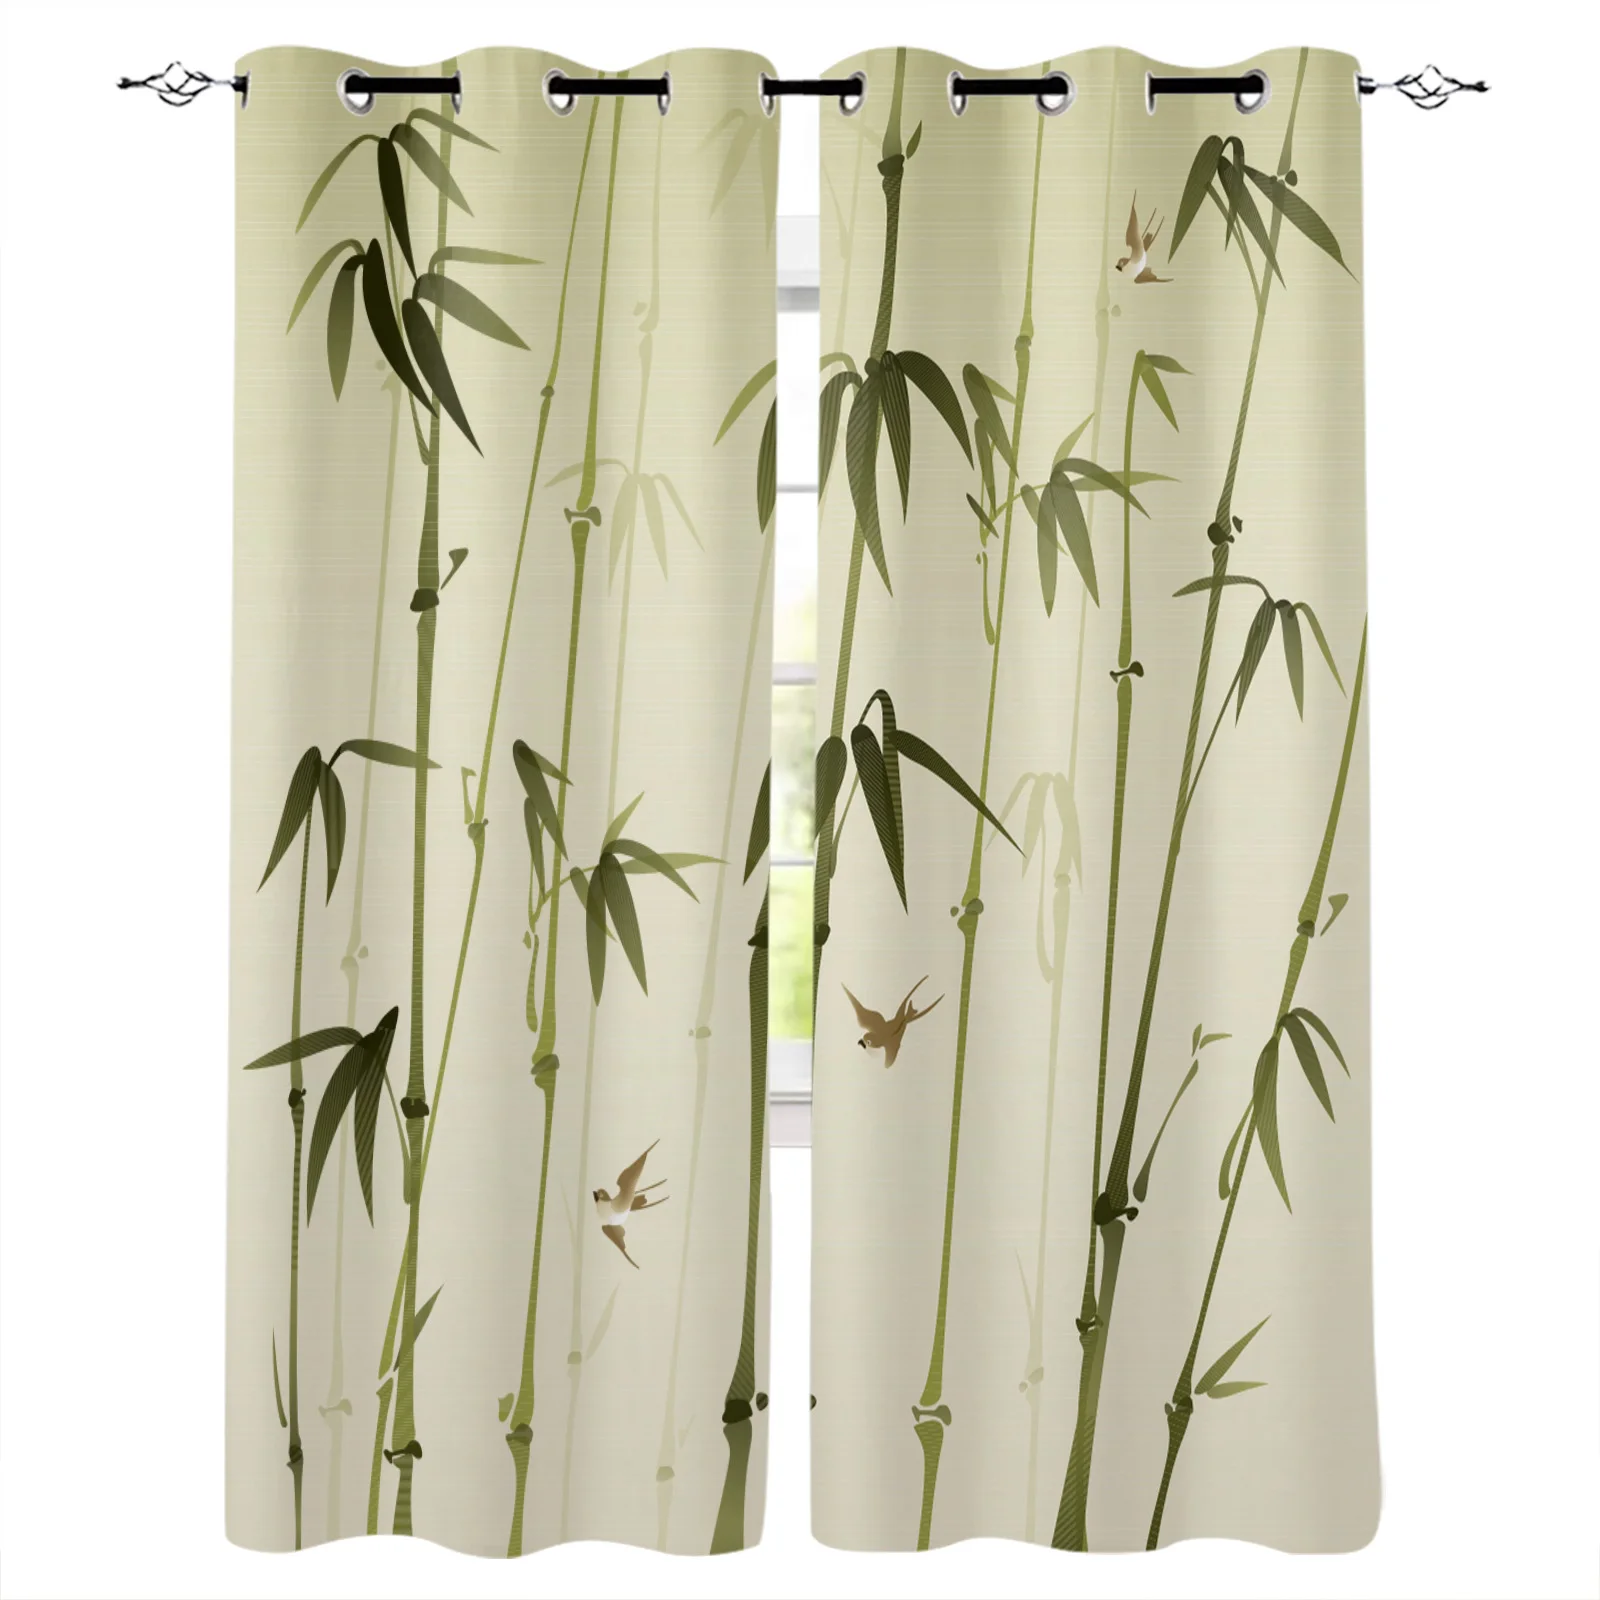 

Бамбуковые затемняющие шторы в китайском стиле, оконные занавески для спальни, гостиной, декоративные оконные принадлежности